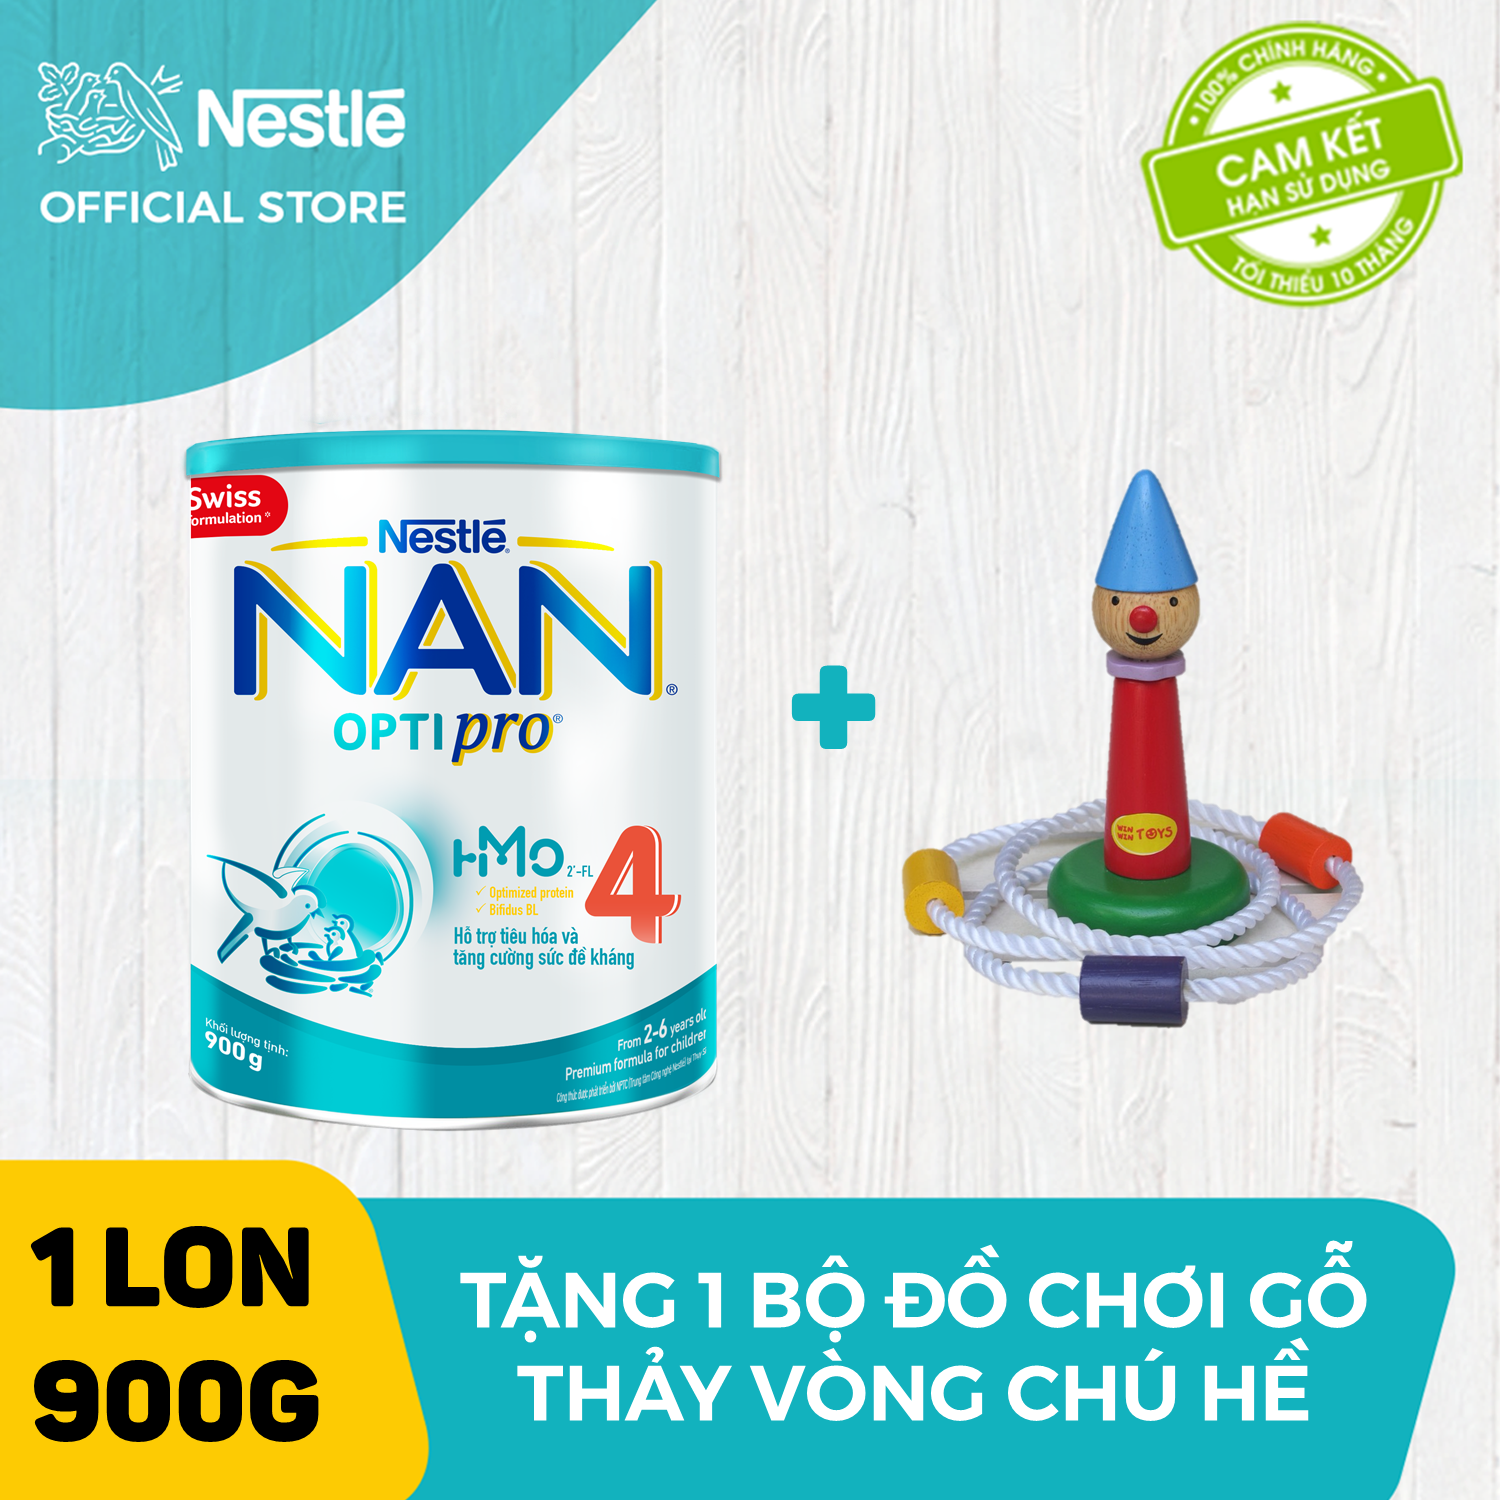 Sữa bột Nestle NAN Optipro 4 HM-O cho trẻ trên 2 tuổi 900g + Tặng 1 bộ Bộ đồ chơi gỗ thảy vòng chú hề